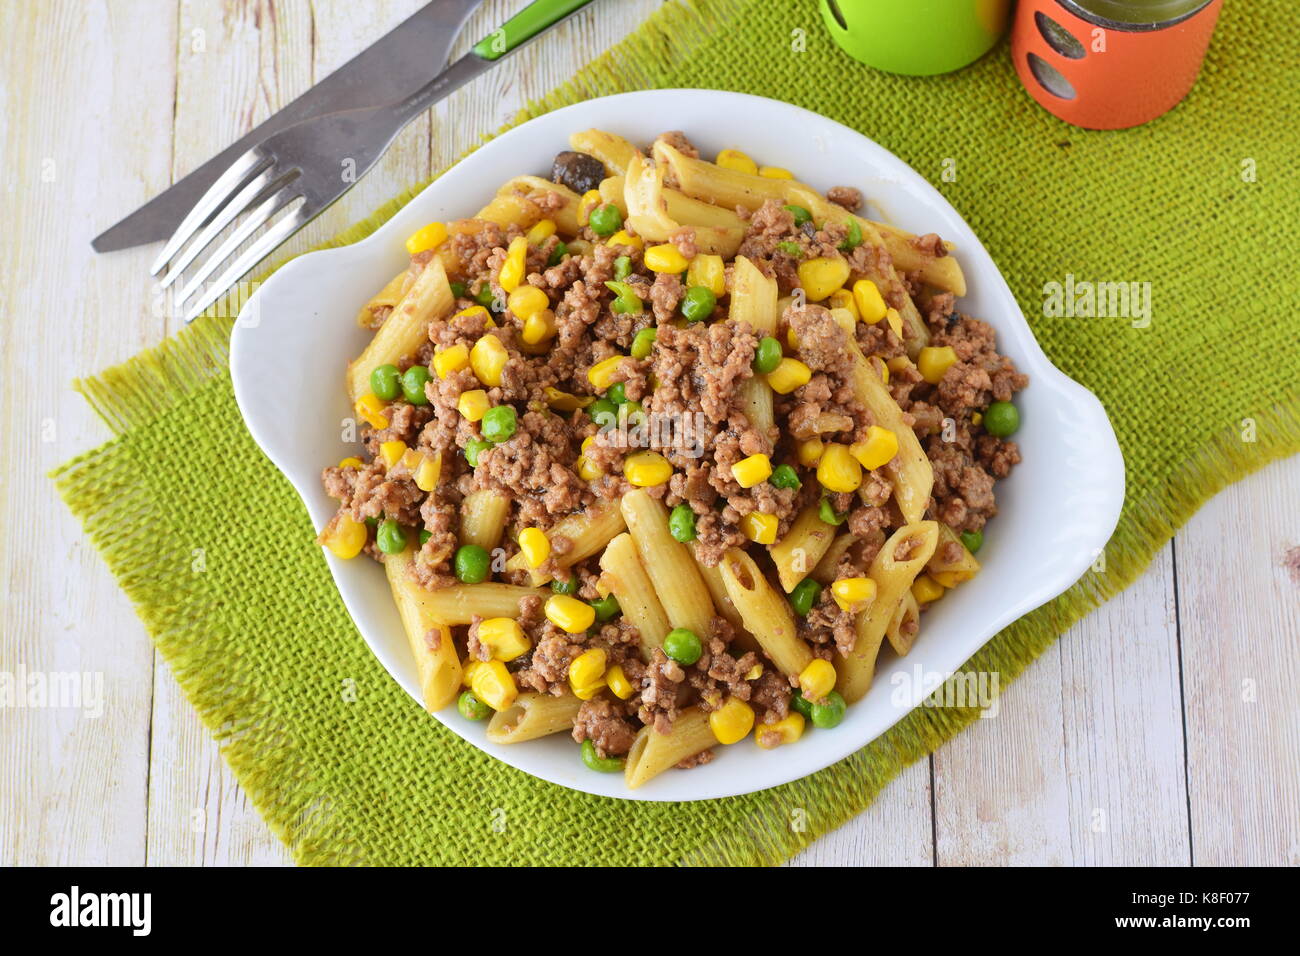 Pasta con carne tritata, i piselli e il mais giallo in una piastra bianca. cucina casalinga. Il mangiare sano concetto Foto Stock